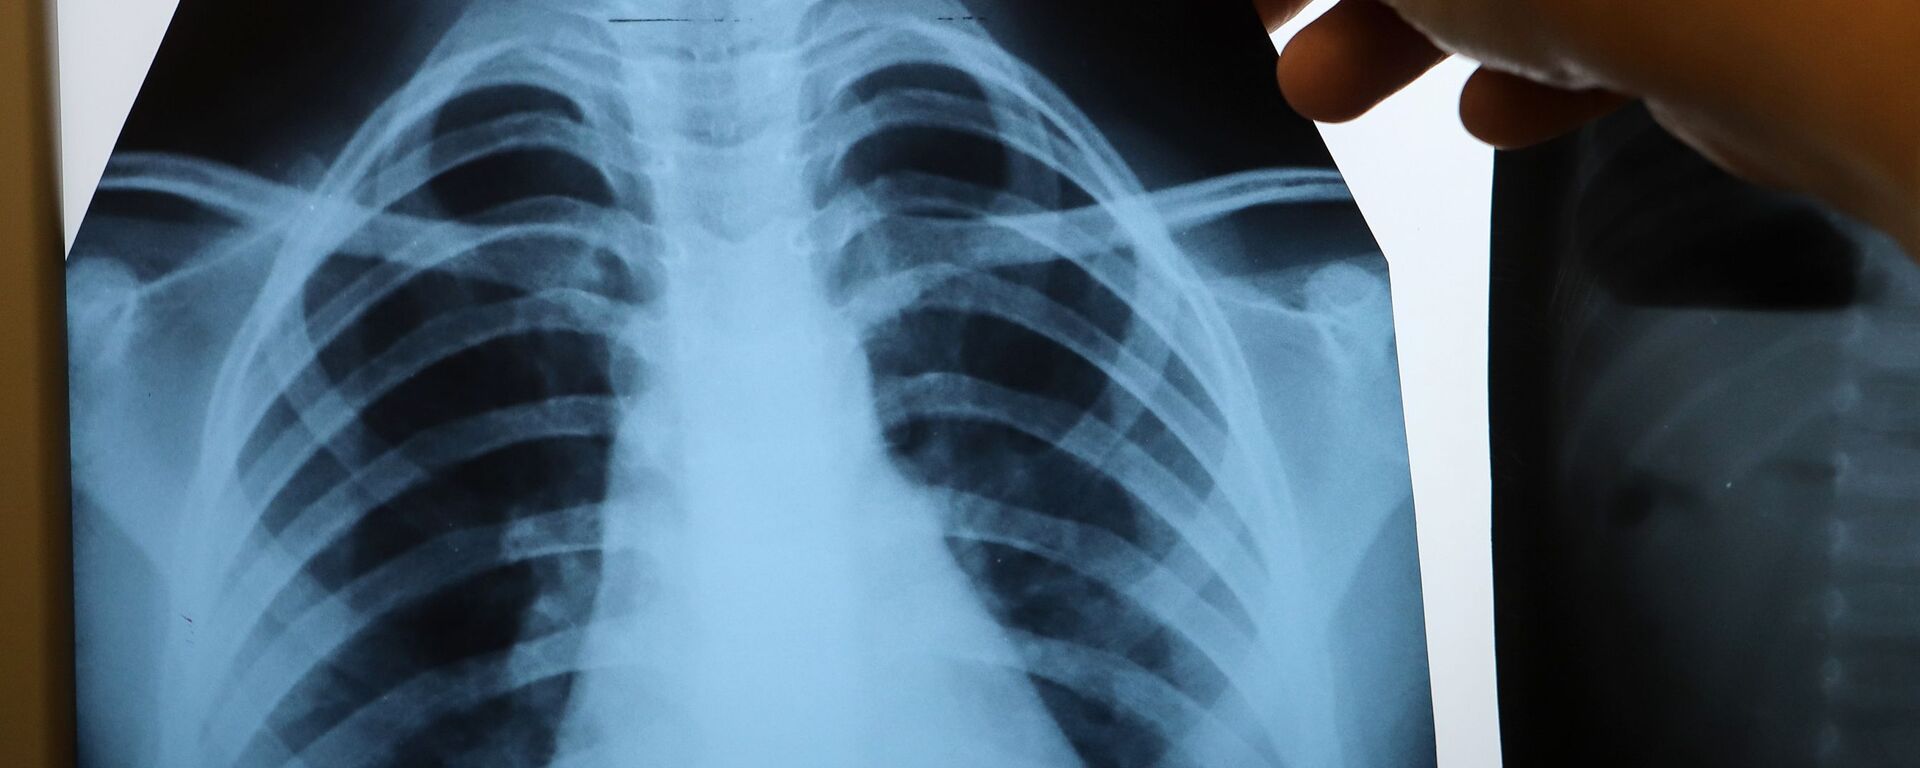 Врач с рентгеном легких в инфекционном корпусе, где лечат пациентов с COVID-19 - Sputnik Беларусь, 1920, 01.12.2020